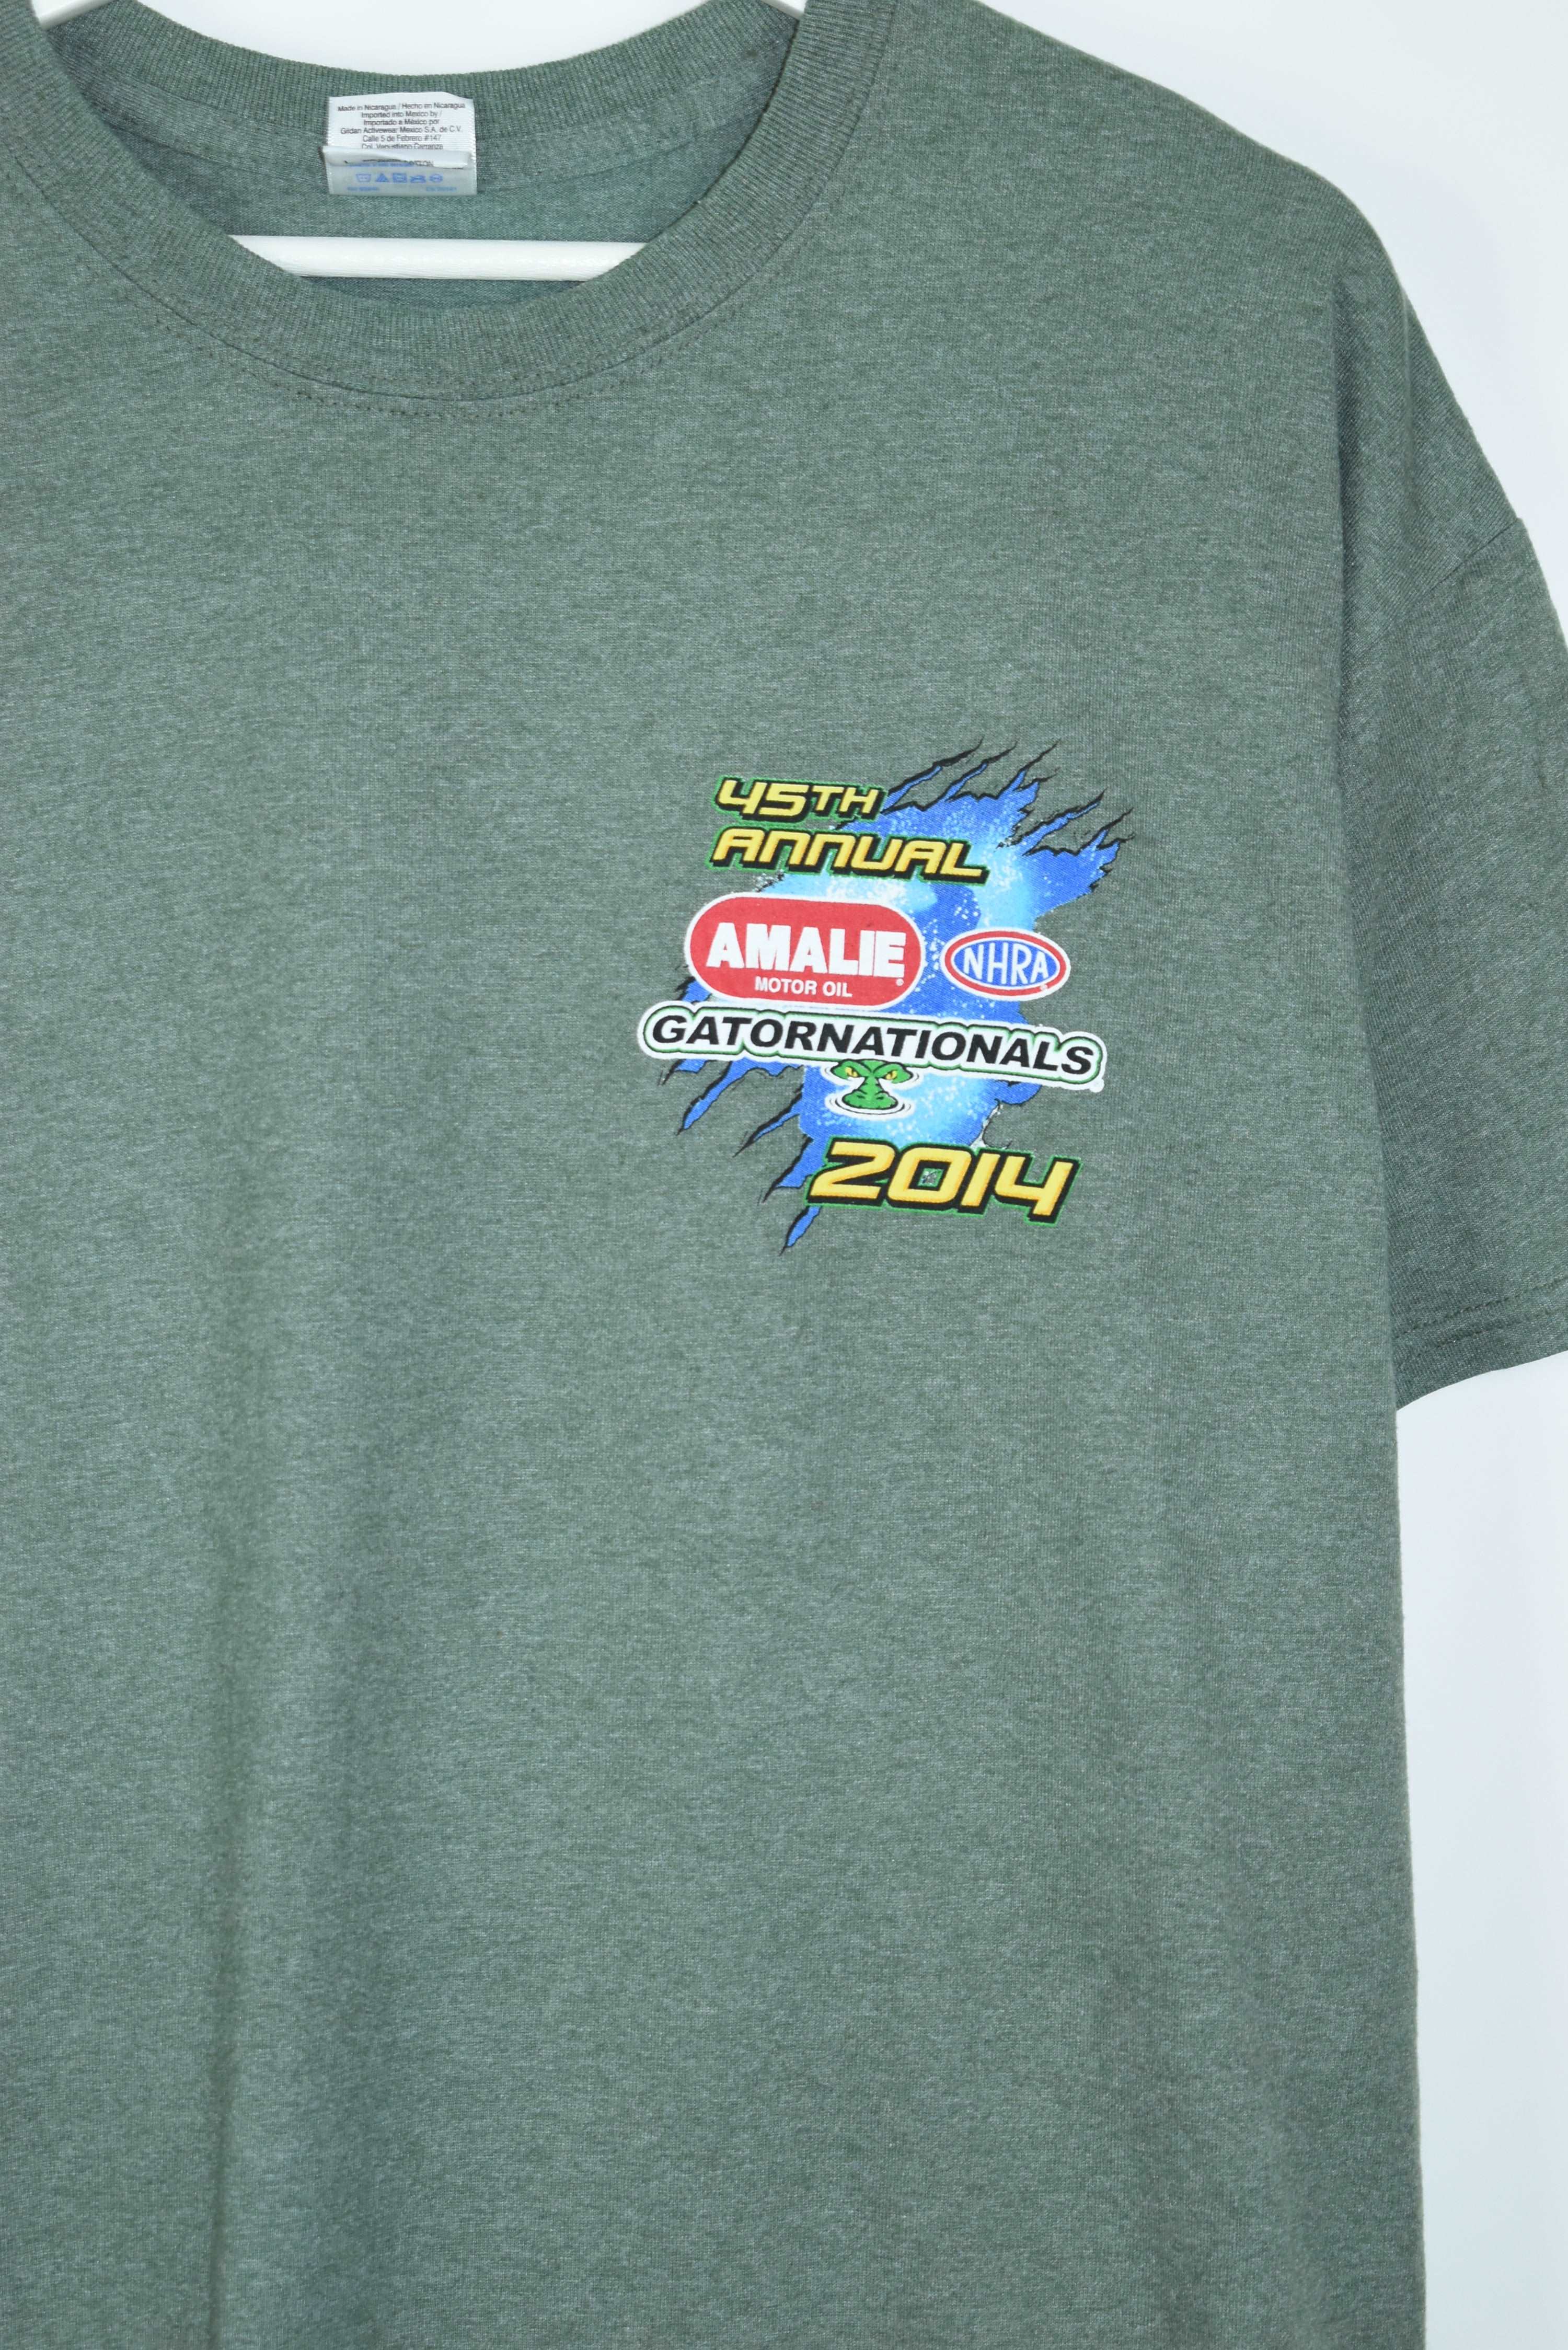 Vintage Amalie Motor Oil NHRA Gatornationals Racing T Shirt Large